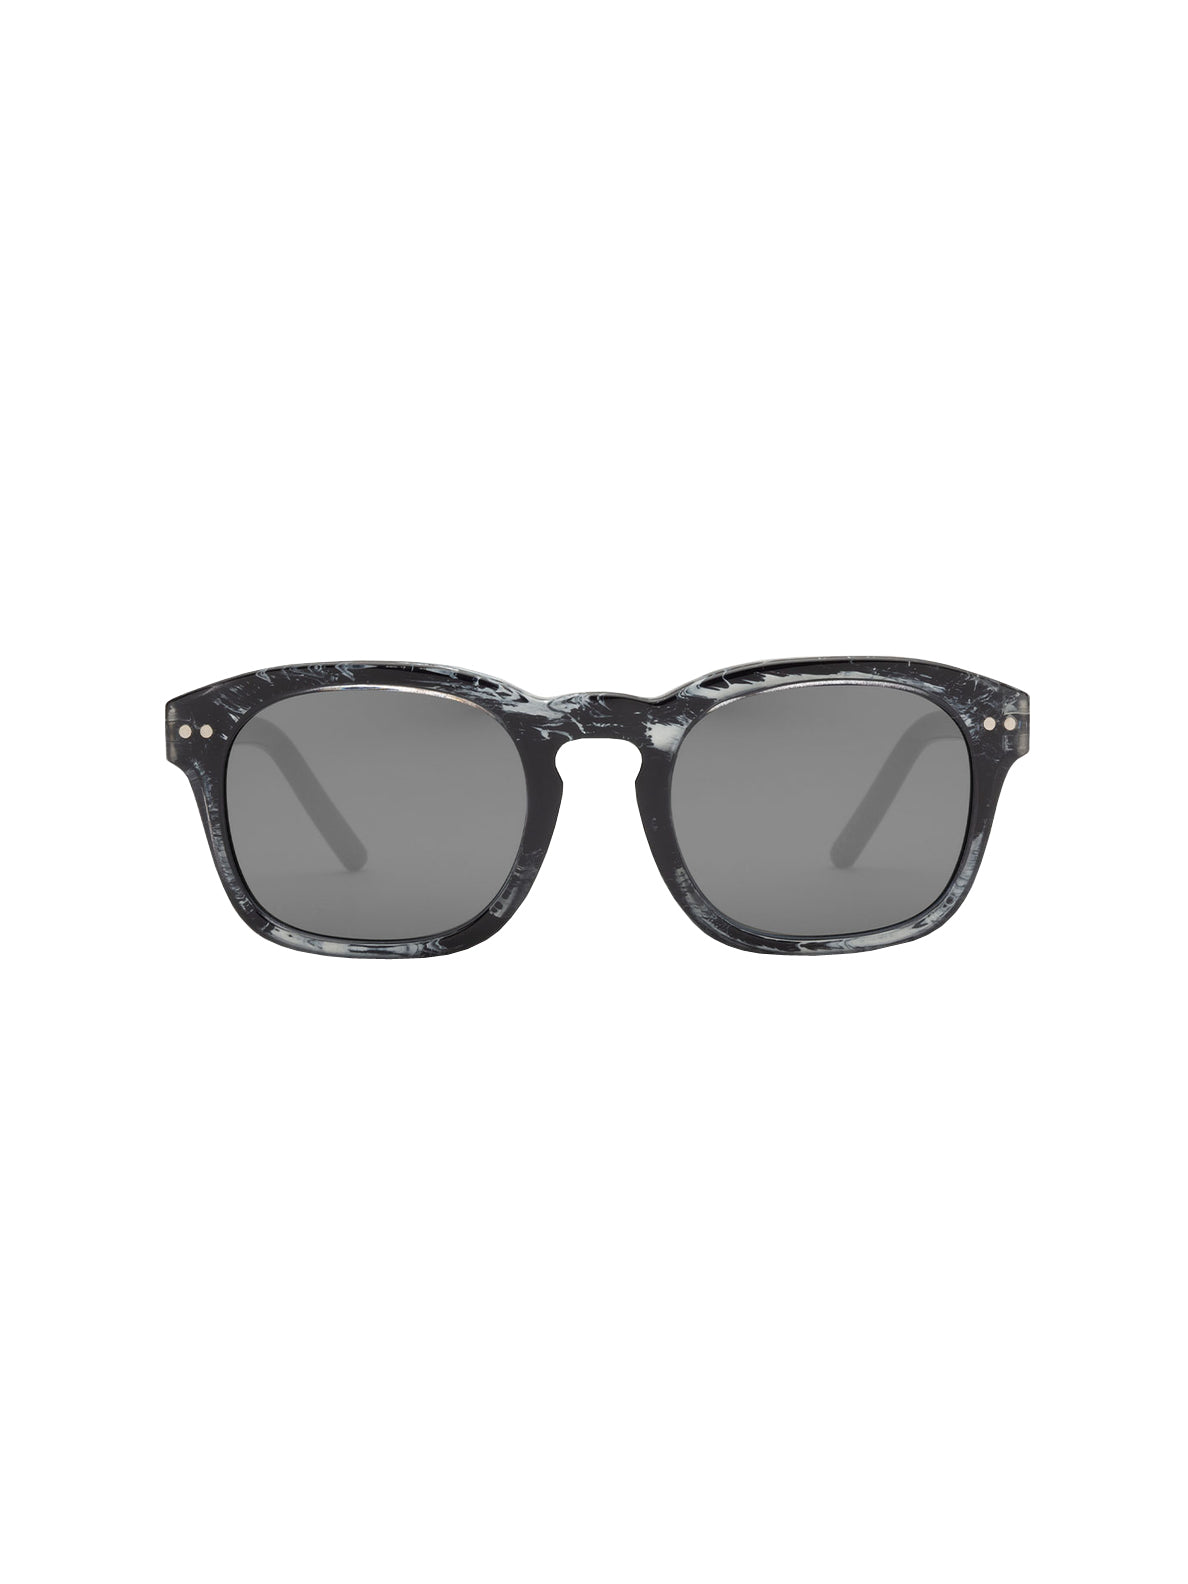 Volcom Earth Tripper Sunglasses GlossMarble SilverMirror